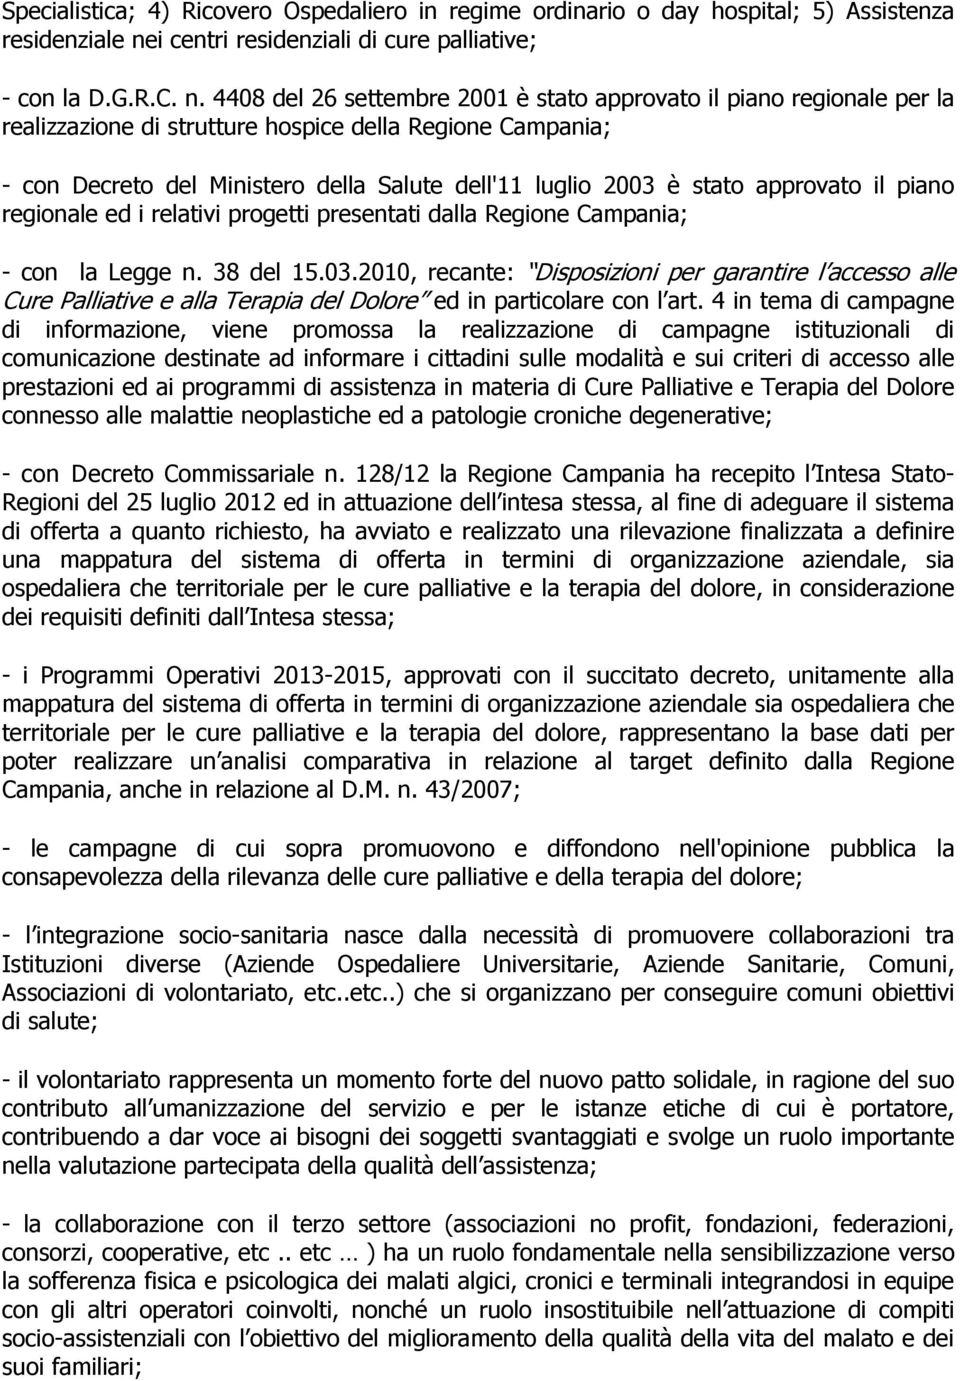 4408 del 26 settembre 2001 è stato approvato il piano regionale per la realizzazione di strutture hospice della Regione Campania; - con Decreto del Ministero della Salute dell'11 luglio 2003 è stato